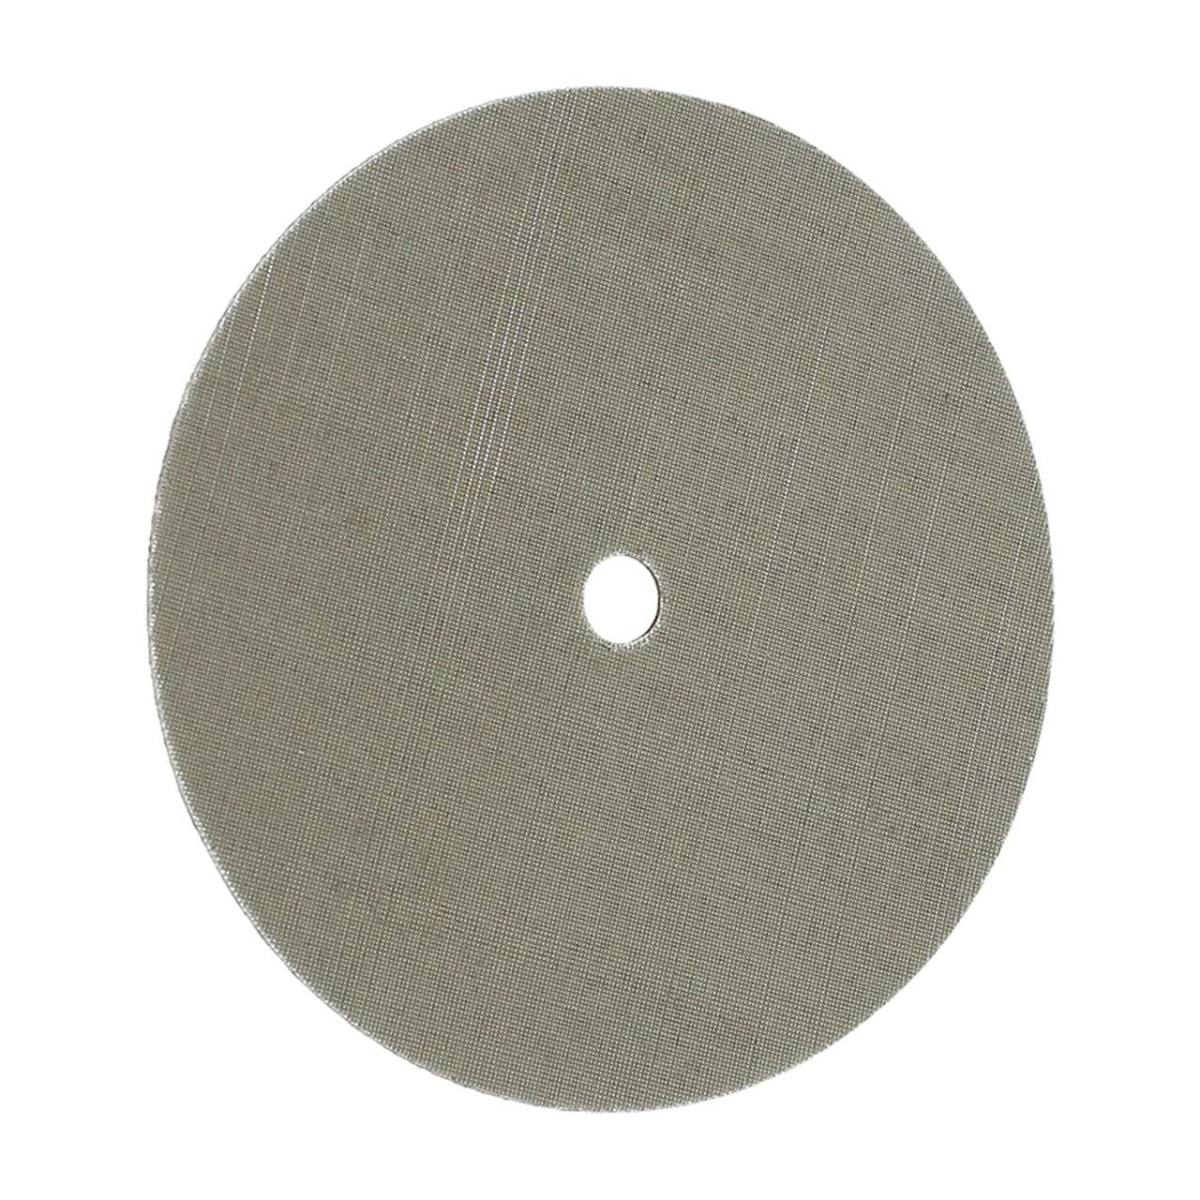 FIX KLETT Disco Trizact, 115 mm x 10 mm, grano 1.200 / A 16, cierre autoadherente